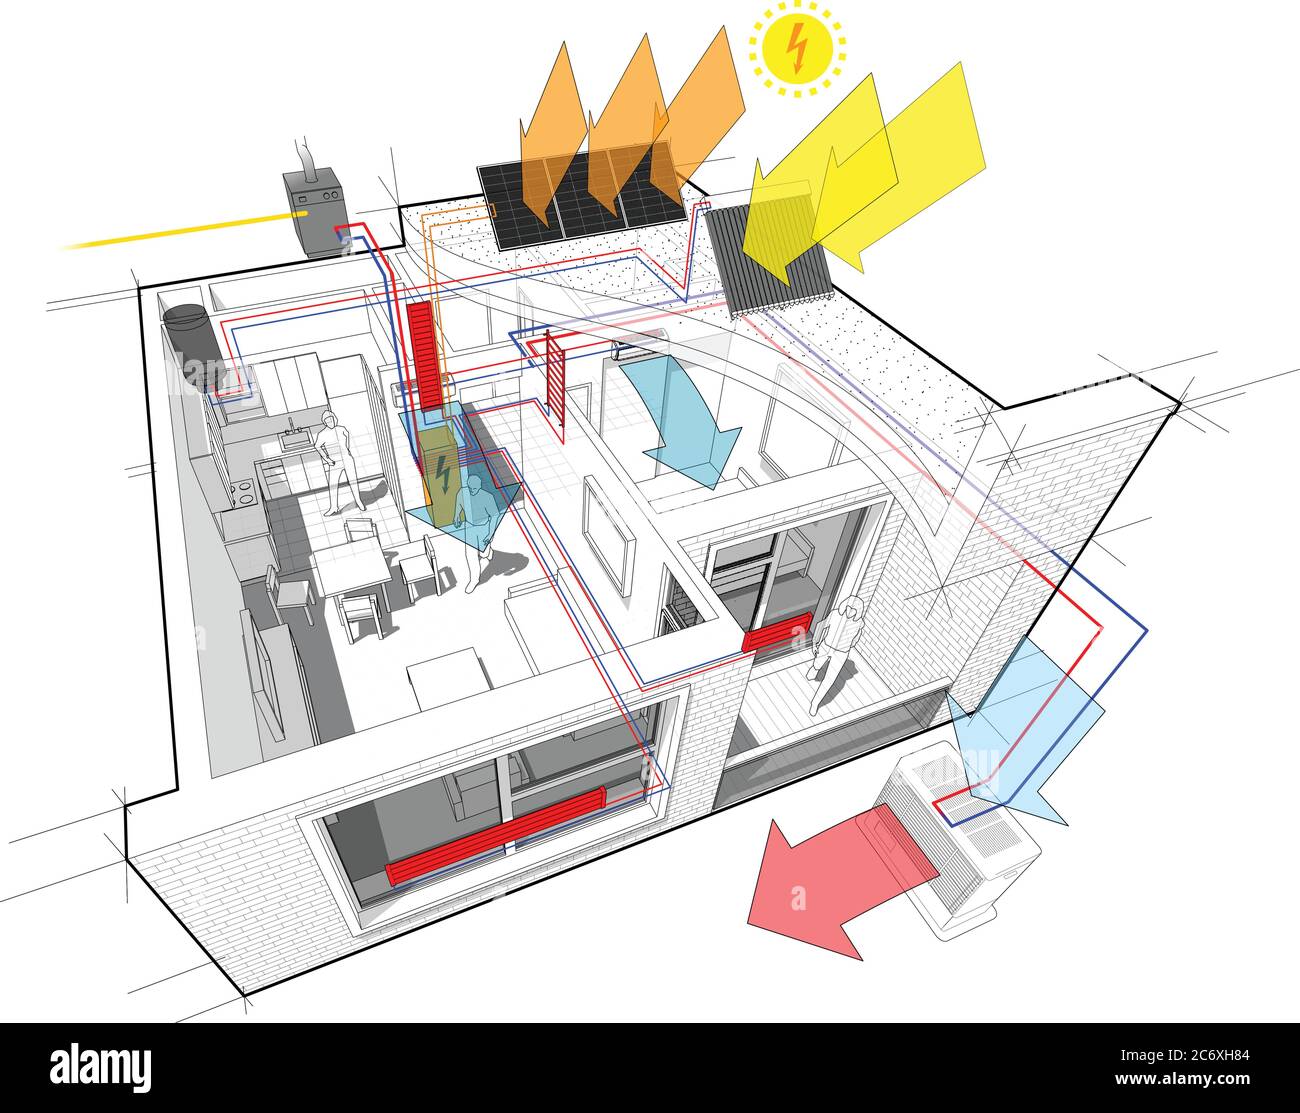 Schema di appartamenti con riscaldamento a radiatore e caldaia a gas, pannelli fotovoltaici e solari e aria condizionata Illustrazione Vettoriale